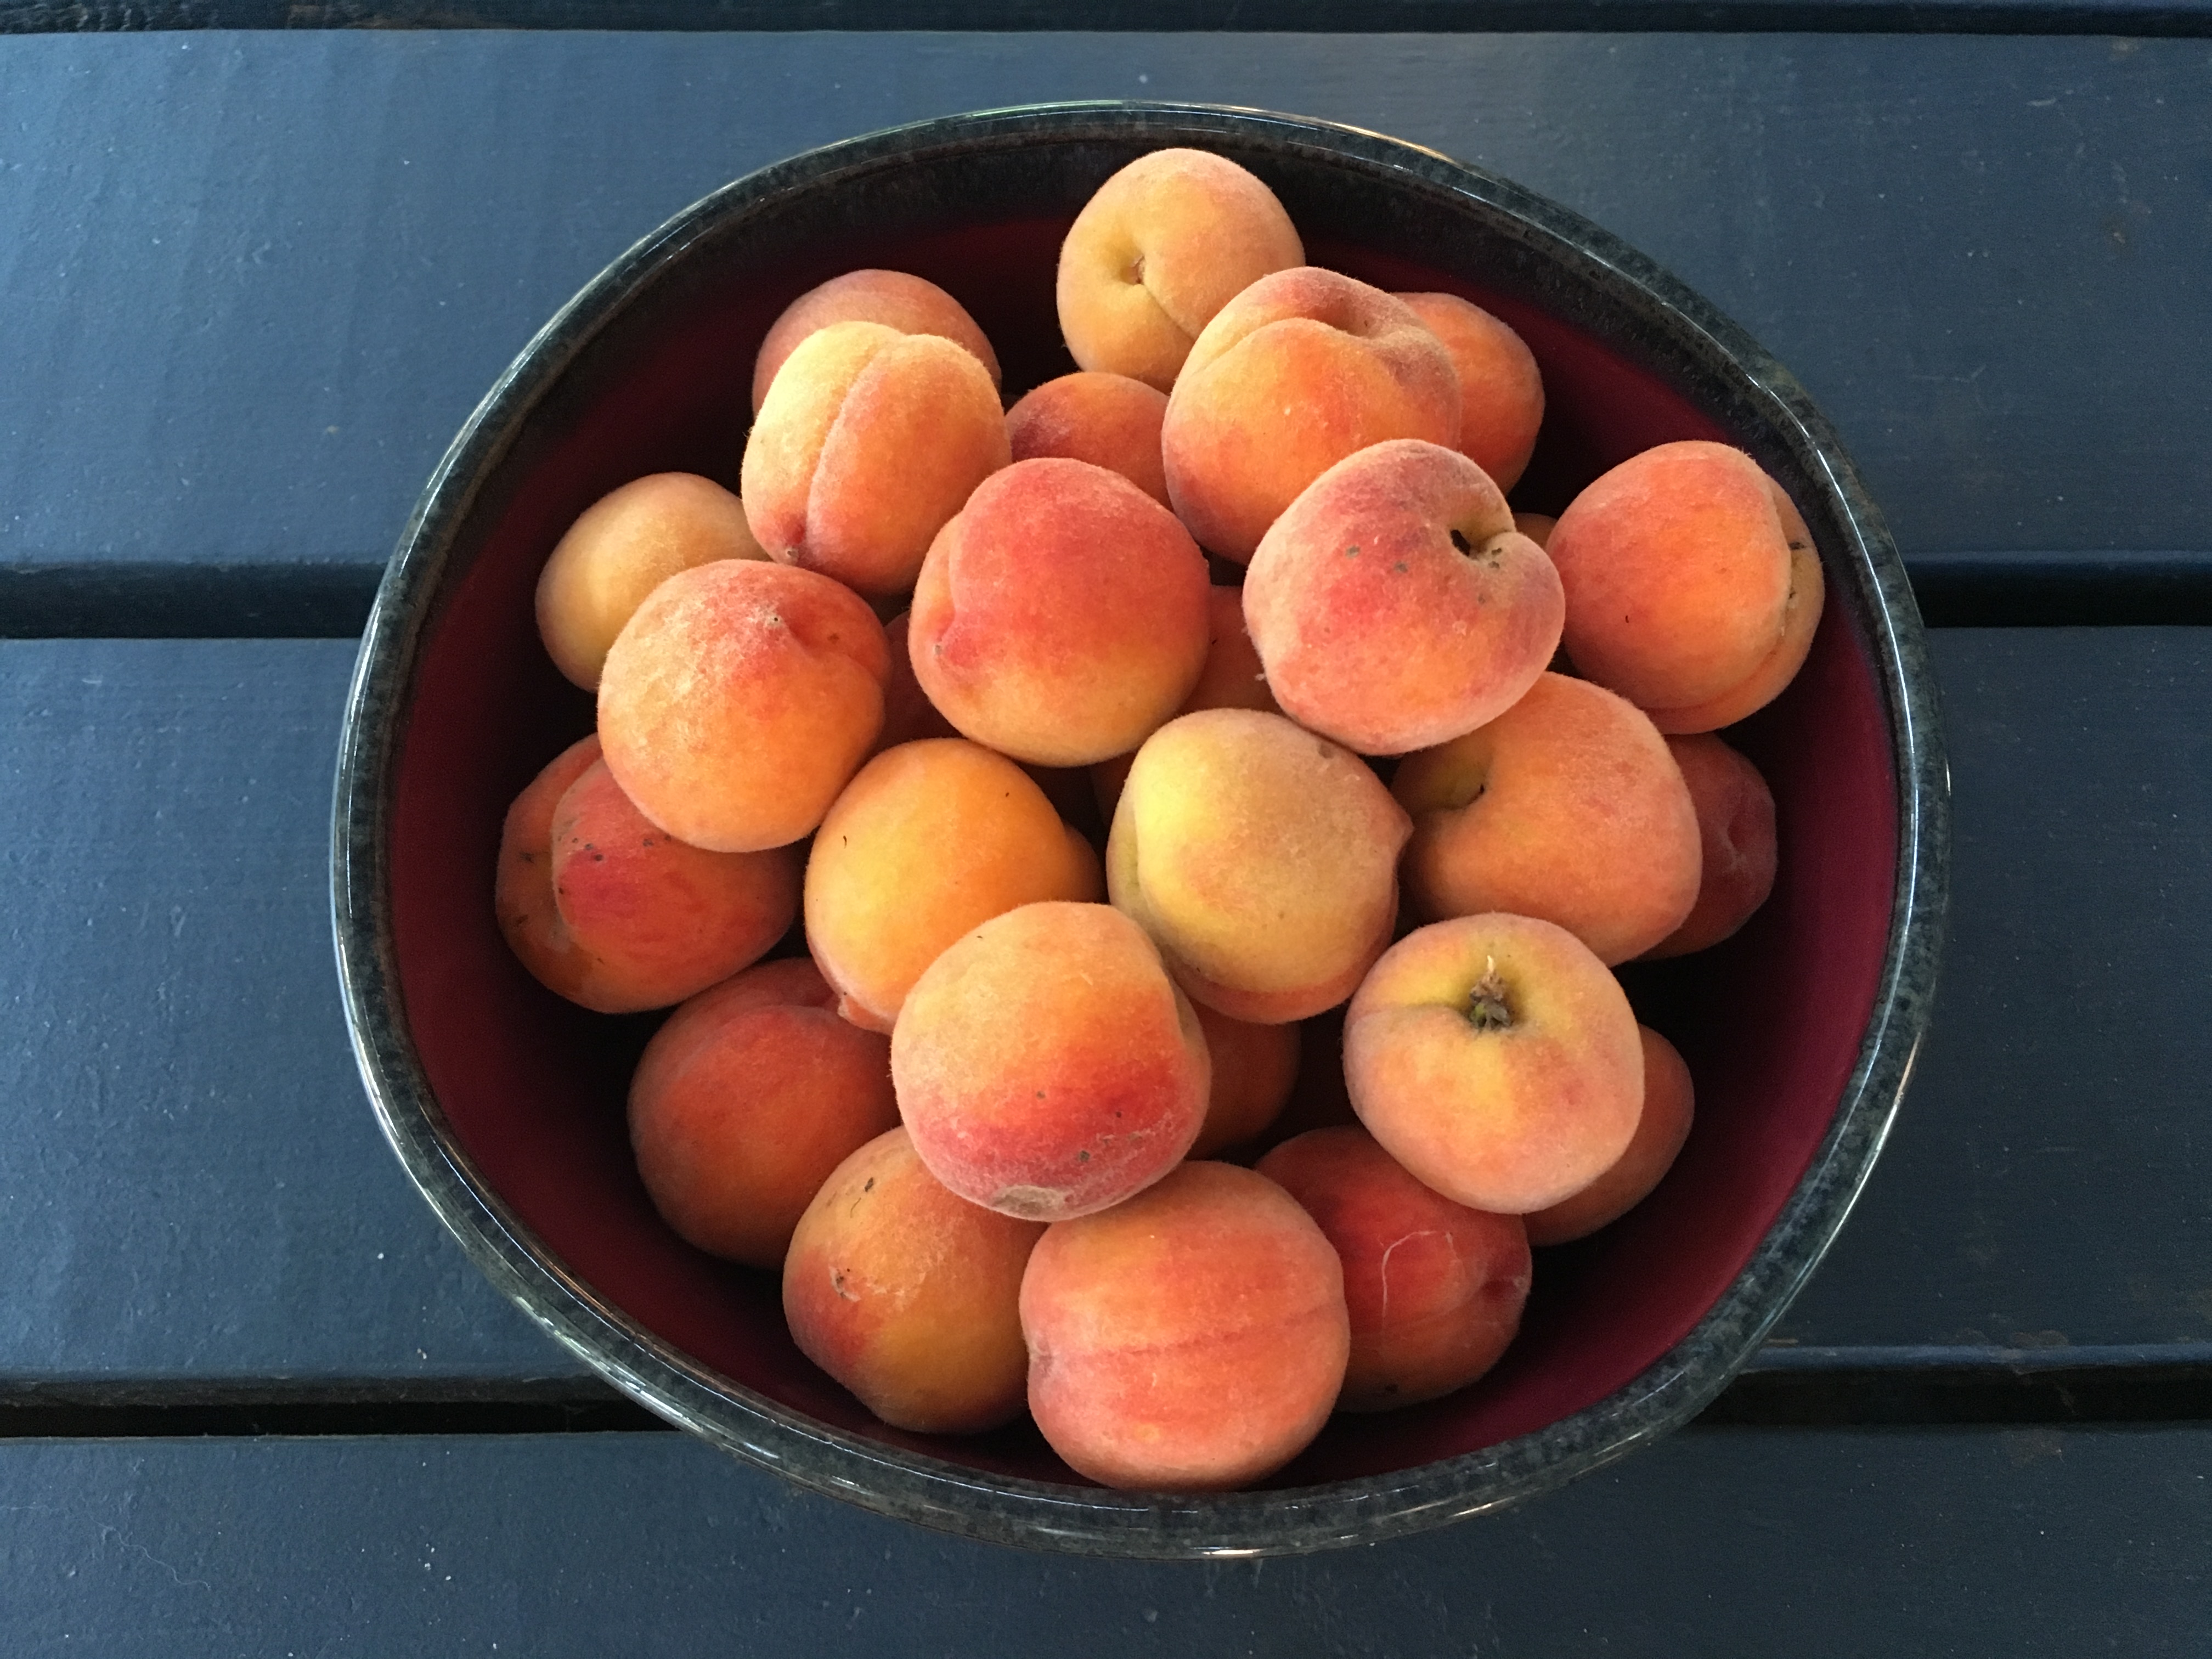 Fresh peaches